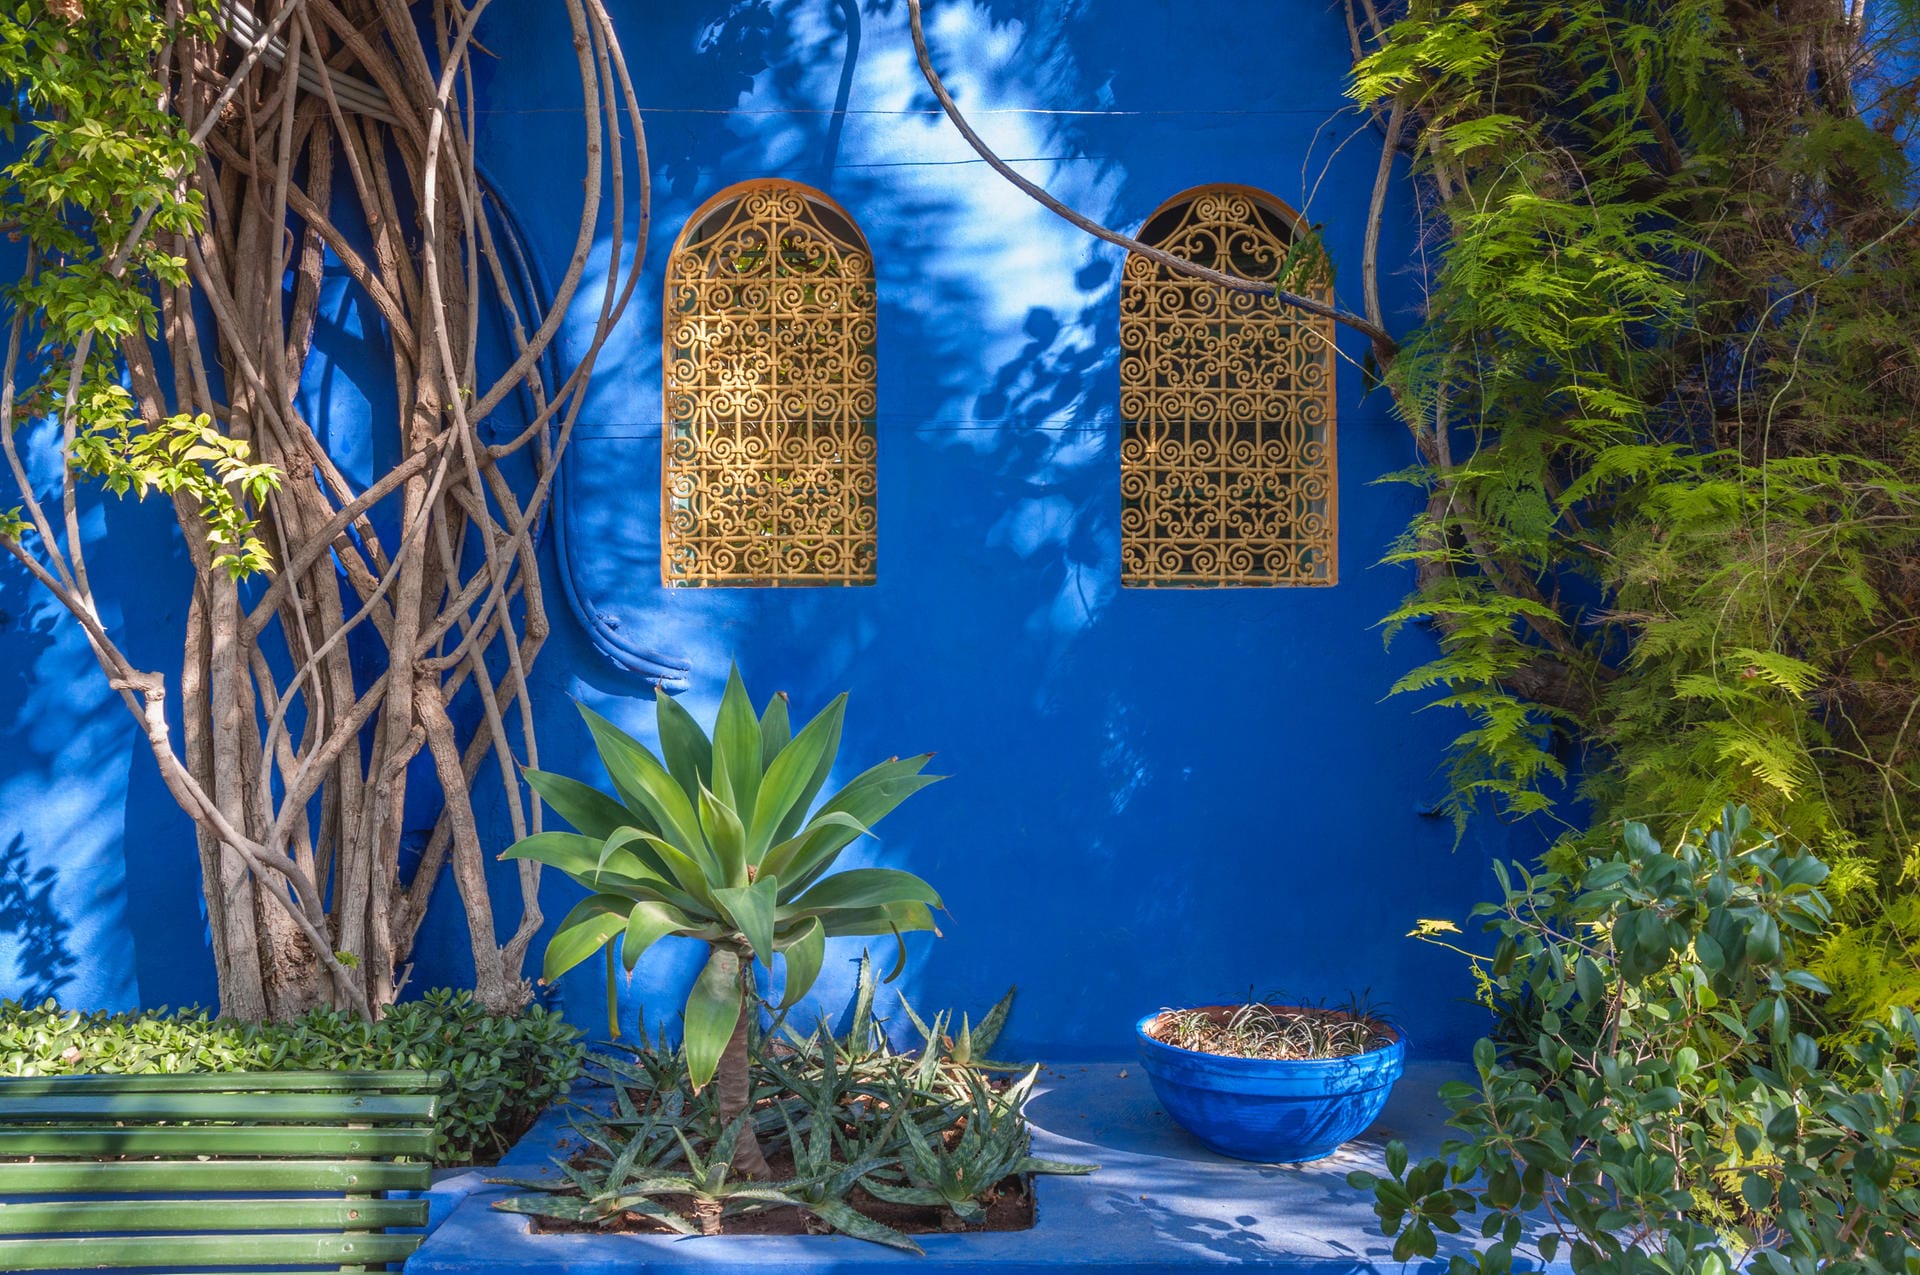 Duftende Oasen, orientalische Gartenkunst: Entdecken Sie die Gärten und Parks von Marrakesch bei einem Streifzug durch Jardin Secret, La-Mamounia-Garten, Cyber Park, Anima-Garten und Jardin Majorelle.